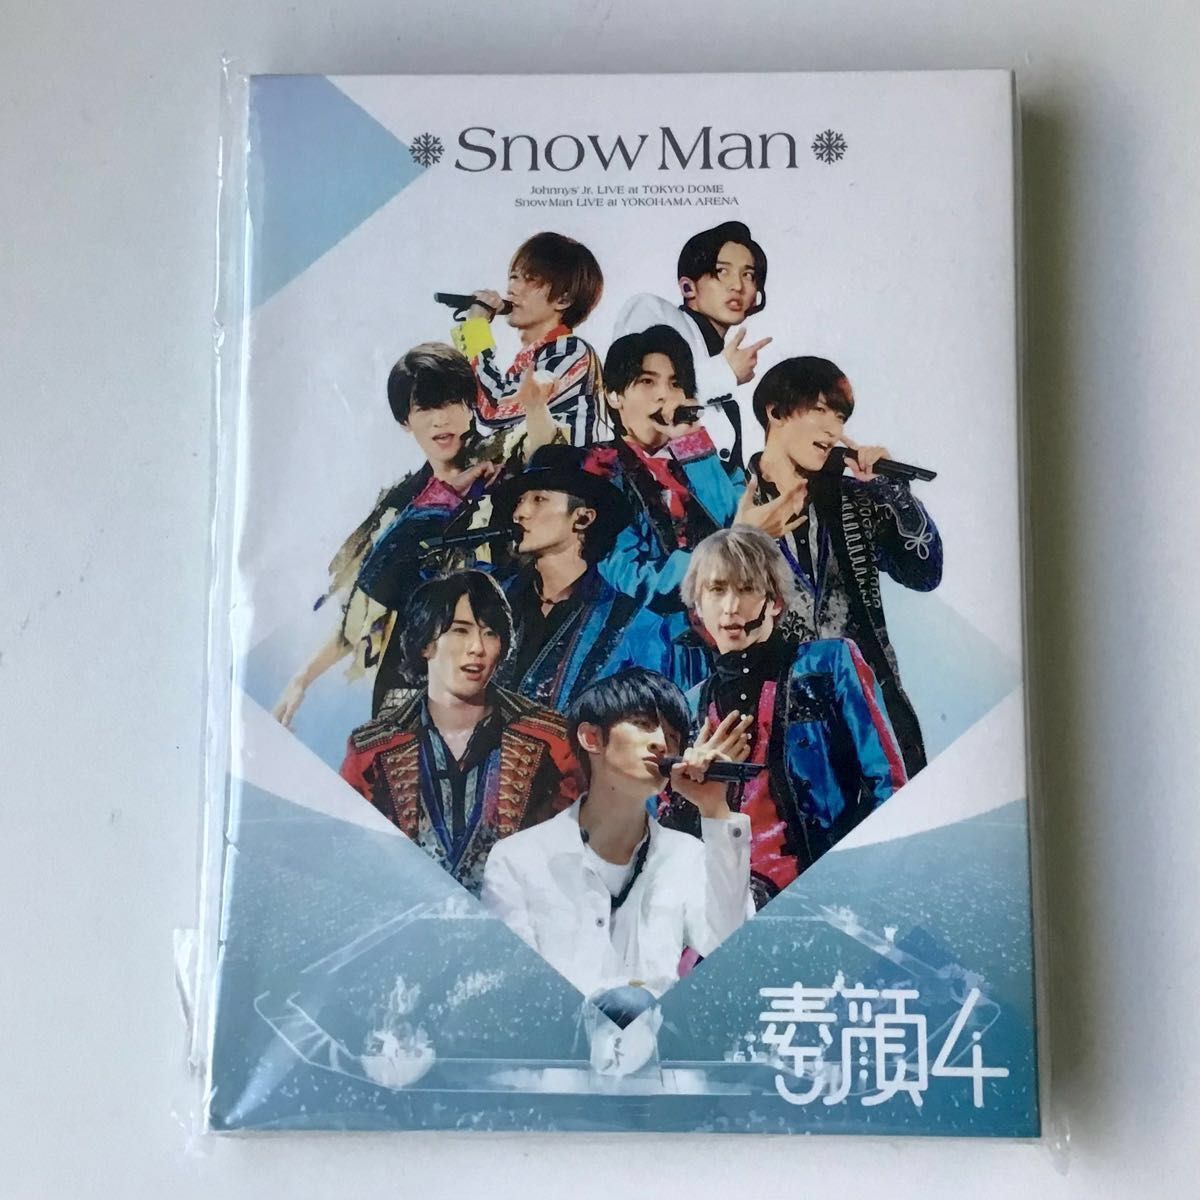 素顔4 SnowMan盤 DVD 3枚組 ポストカード付き 限定盤 正規品｜Yahoo